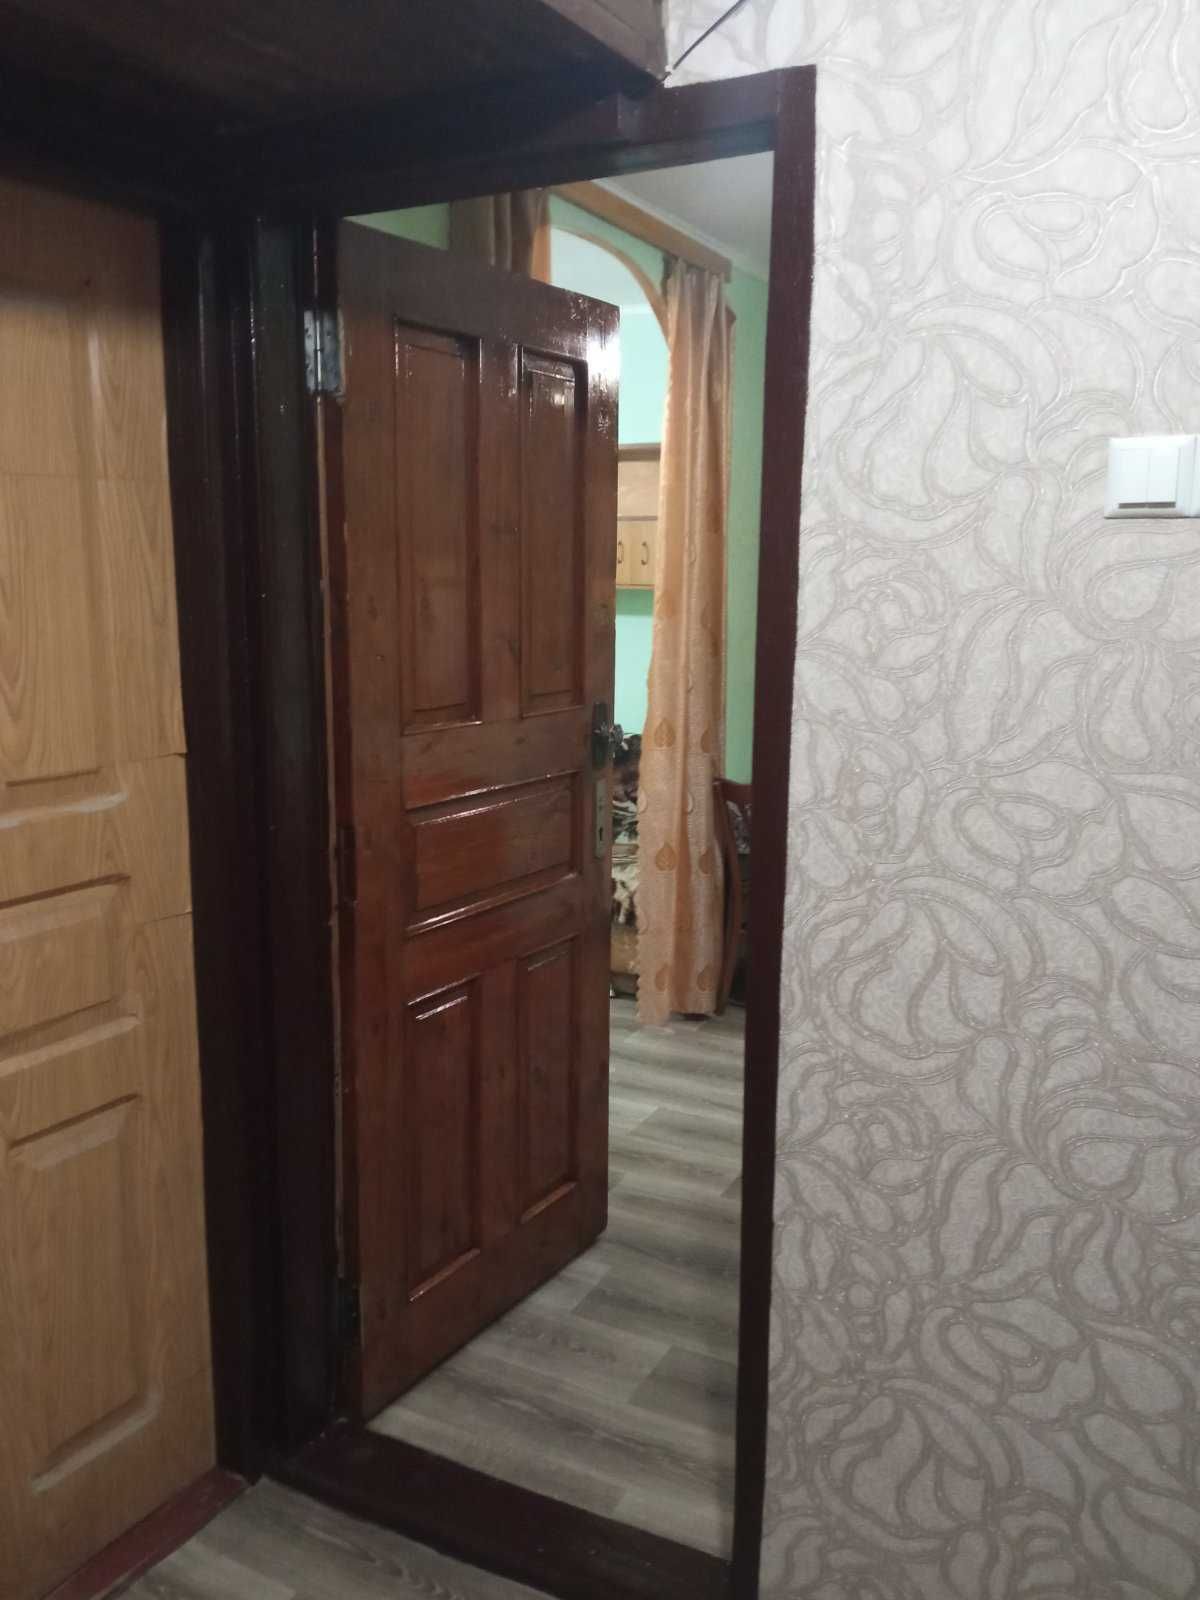 Продам гостинку(комнату)Одесская